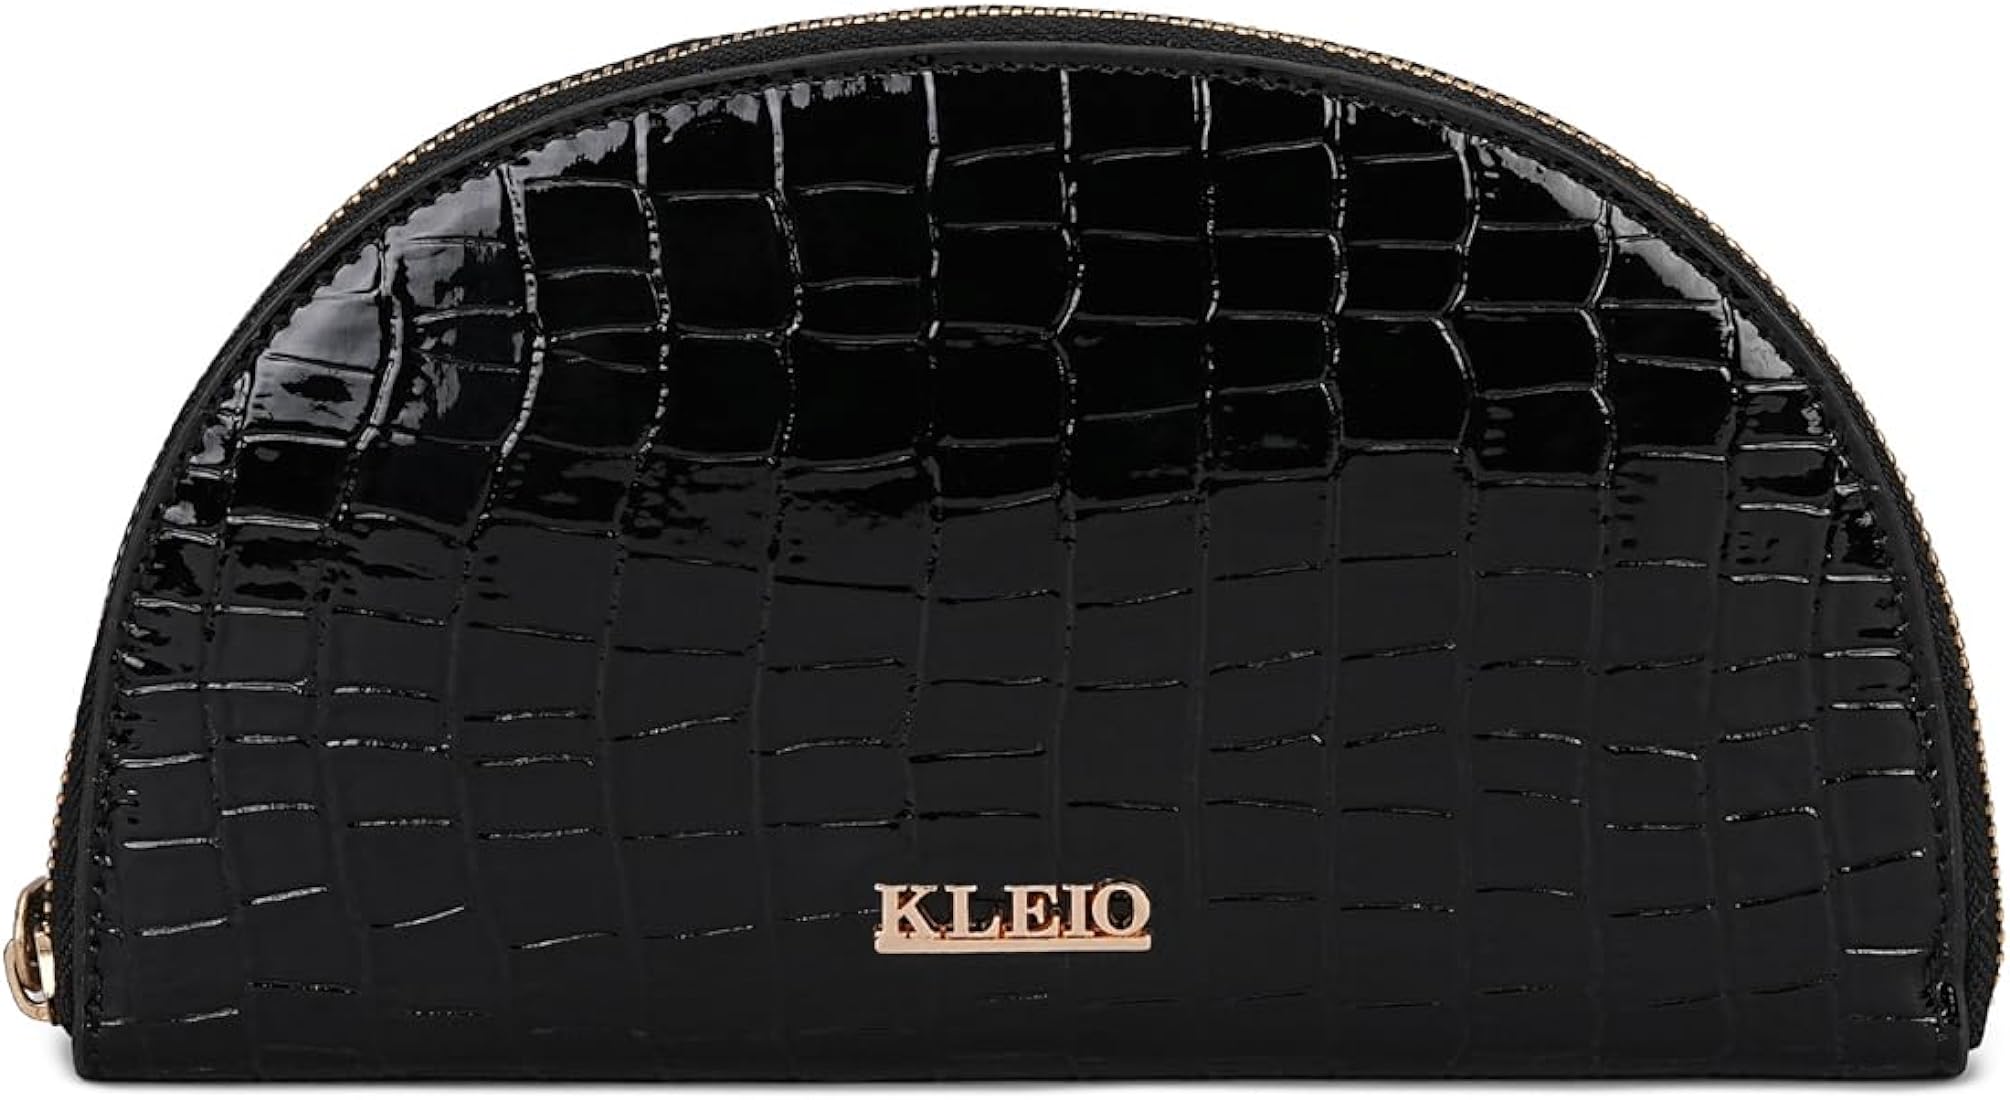 kleio wallet brand